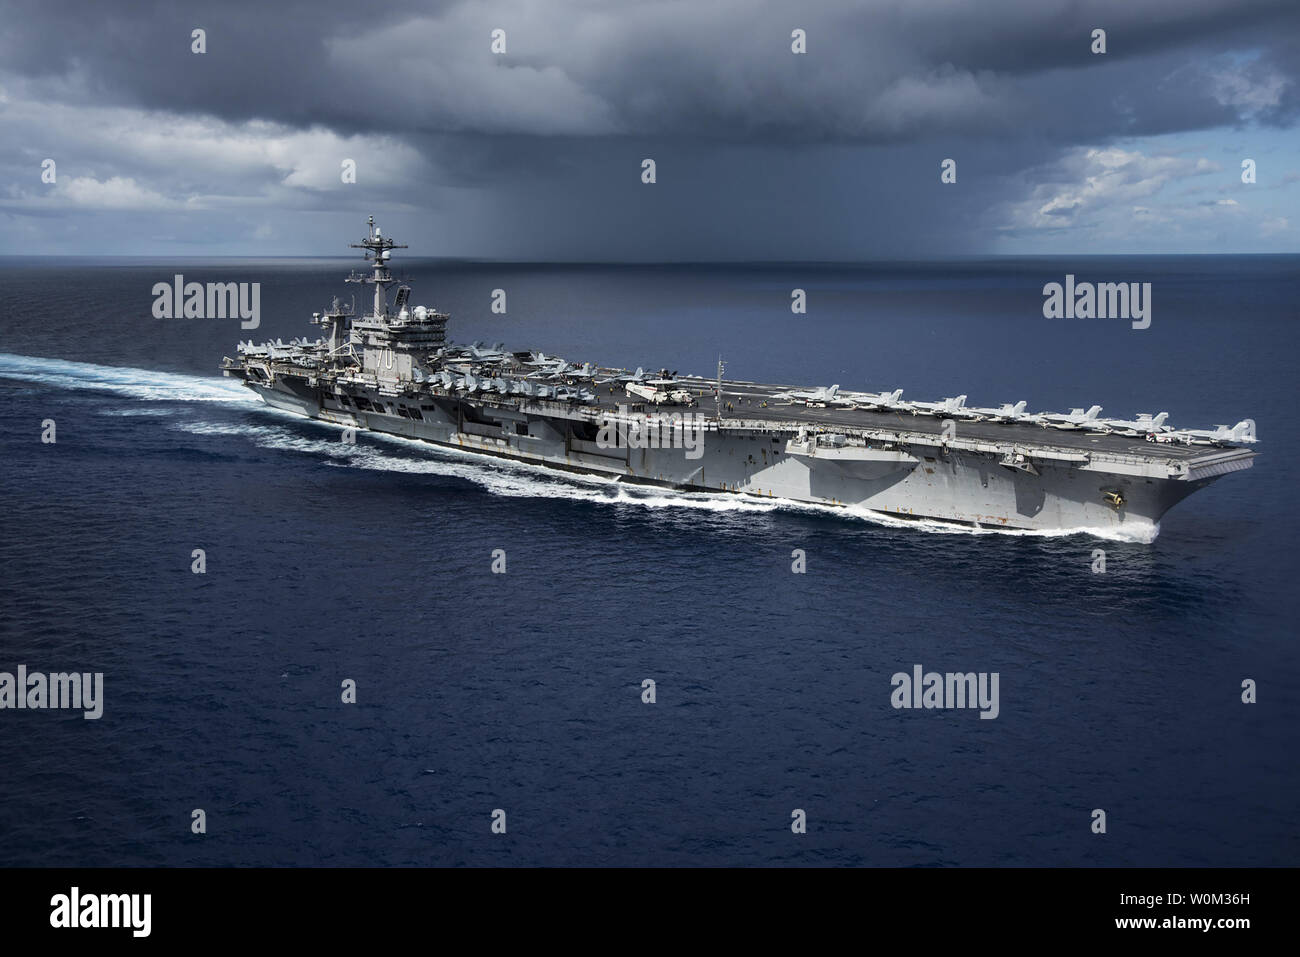 La Nimitz-class portaerei USS Carl Vinson (CVN 70) transita il Mare delle Filippine durante la conduzione di un esercizio bilaterale con il Giappone di autodifesa marittima vigore il 23 aprile 2017. La Carl Vinson Carrier Strike gruppo è operativo come parte degli Stati Uniti 7 flotta, ma rimane distribuito sotto la U.S. 3a flotta in avanti il concetto operativo che fornisce ulteriori opzioni per la flotta del Pacifico commander e sfrutta le funzionalità sia di 3° e 7° flotte. Foto di MC2 Z.A. Landers/STATI UNITI Navy/UPI Foto Stock